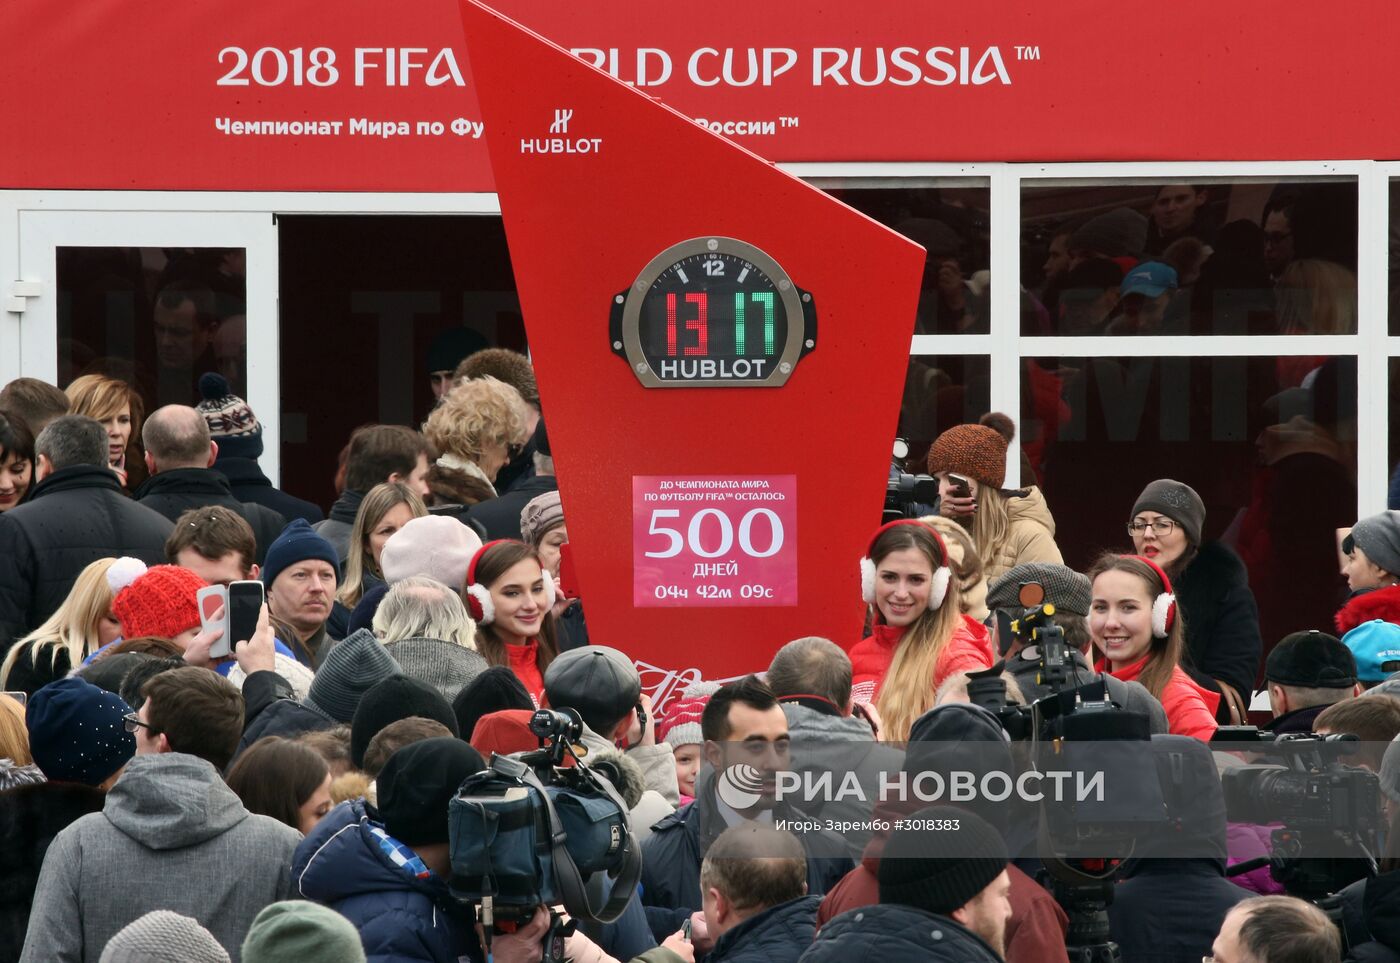 500 дней до старта Чемпионата мира 2018 по футболу